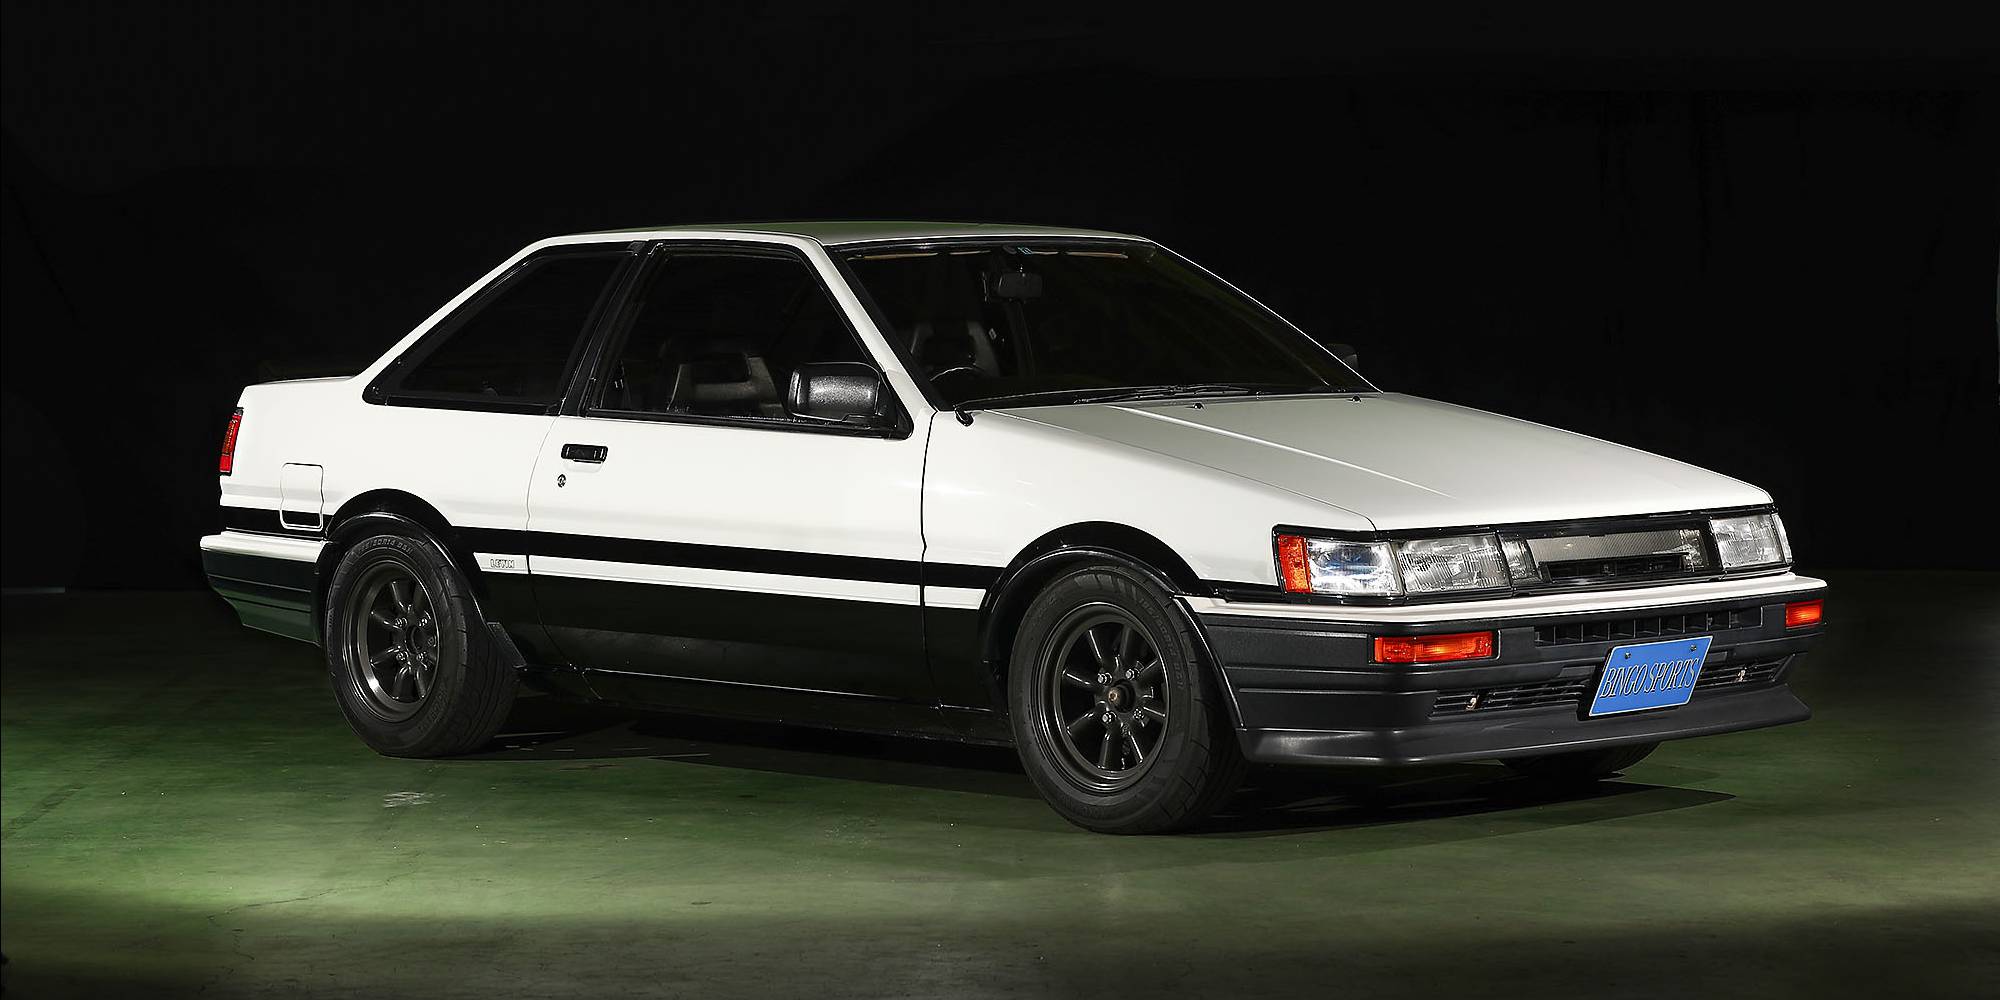 1987年式 トヨタ カローラレビン AE86 GT-APEX|ビンゴスポーツ/希少車、 絶版車、高級車の販売・買取。